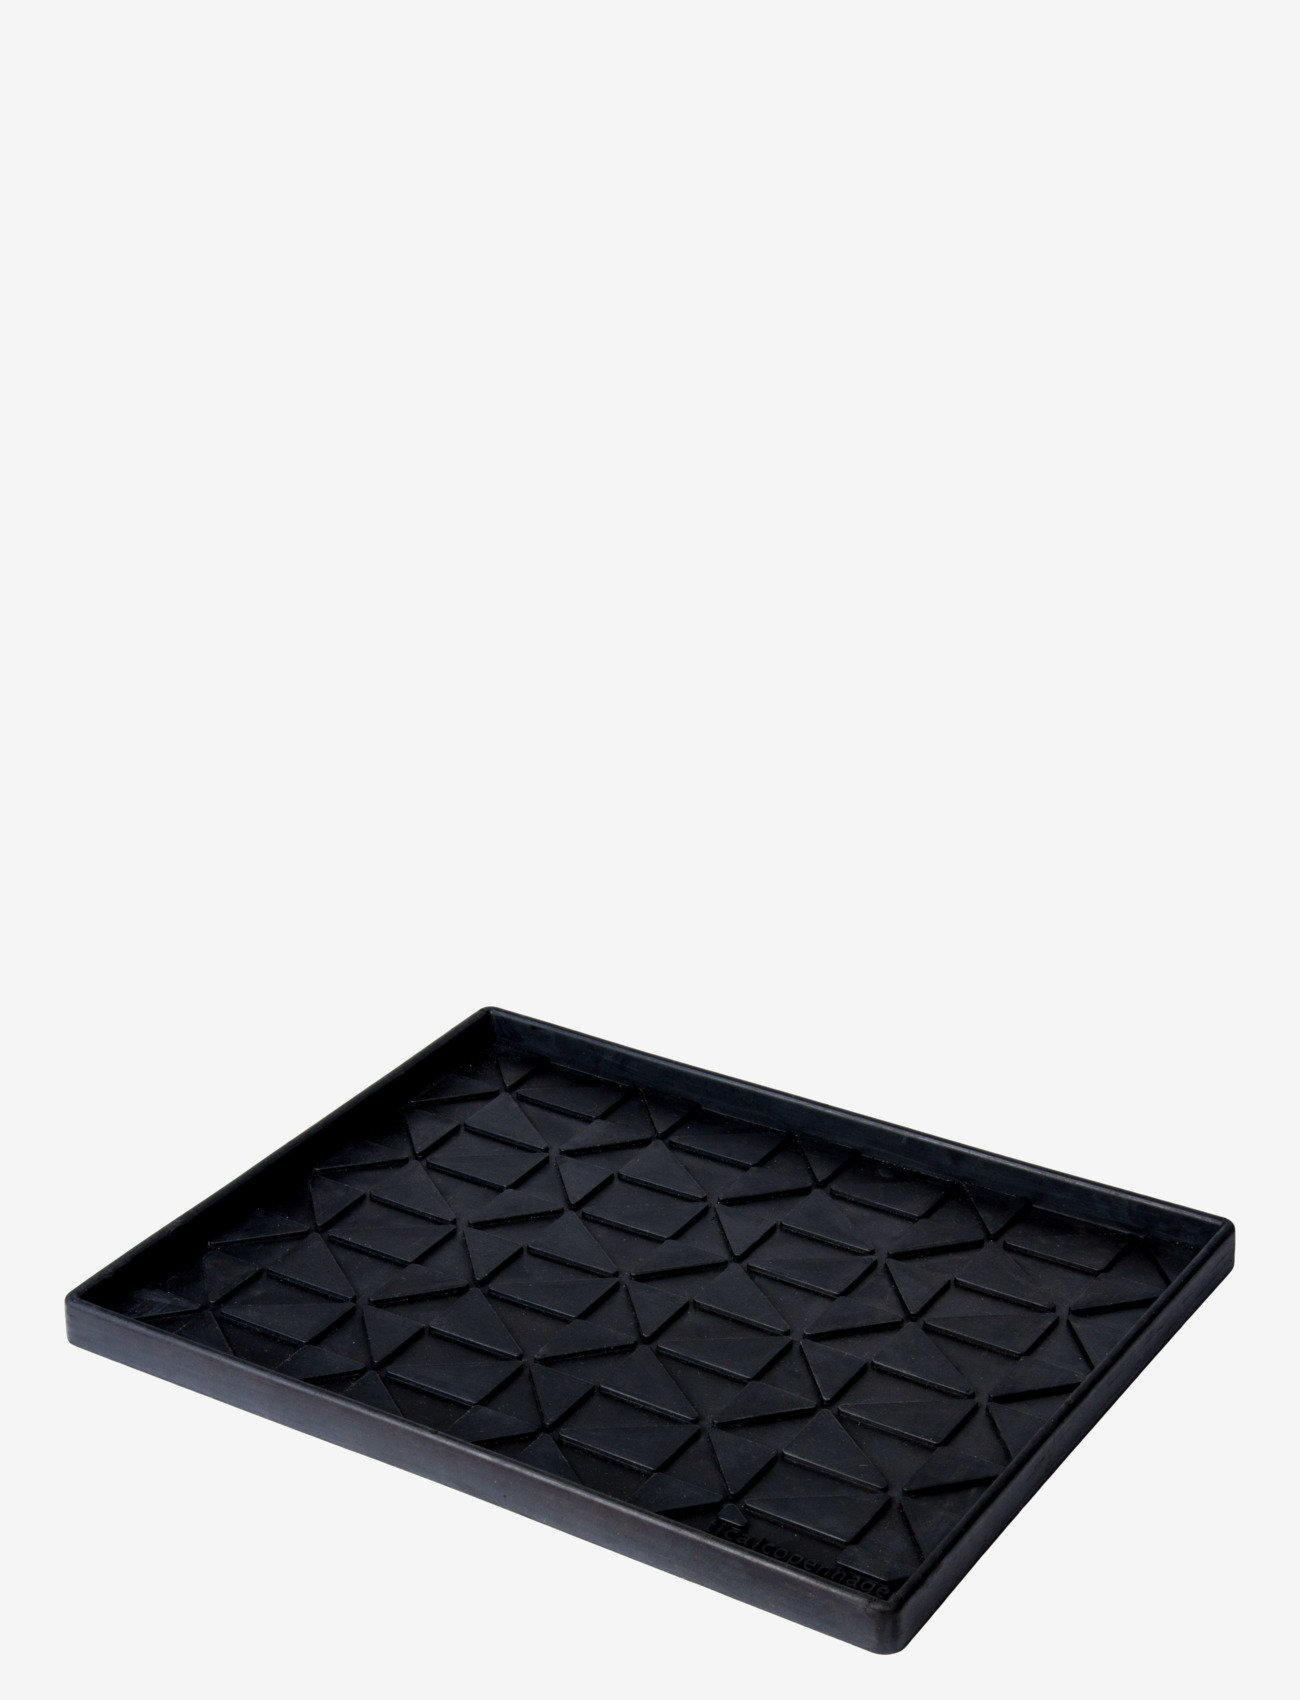 tica copenhagen - Shoe and boot tray rubber, M:48x38x3 cm - die niedrigsten preise - graphic design - 1